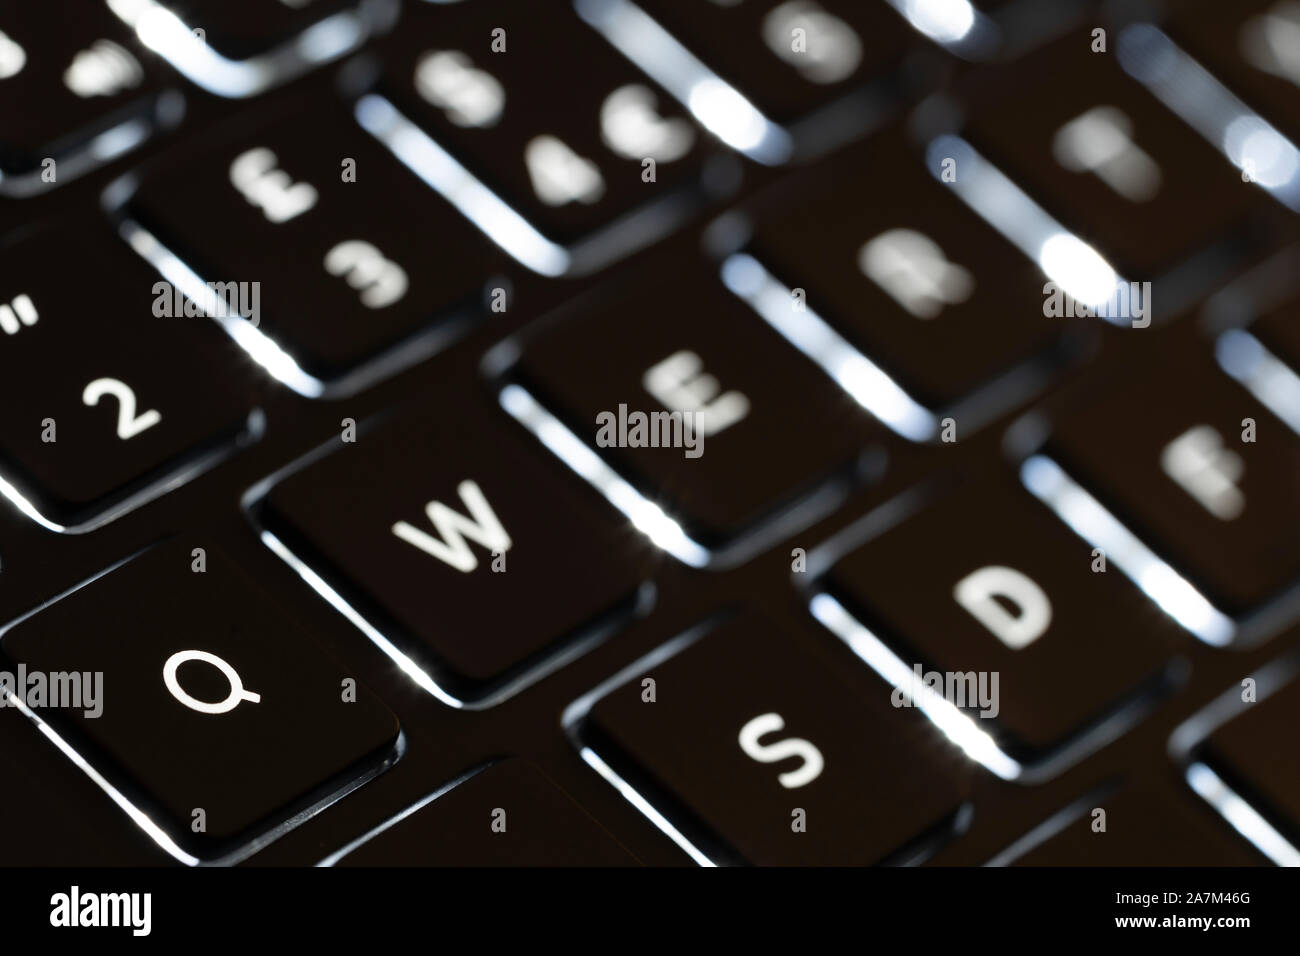 Un clavier anglais qwerty rétroéclairé. Concept - les mots de passe. qwerty est l'un des plus communs et non sécurisé de mots de passe dans l'utilisation Banque D'Images